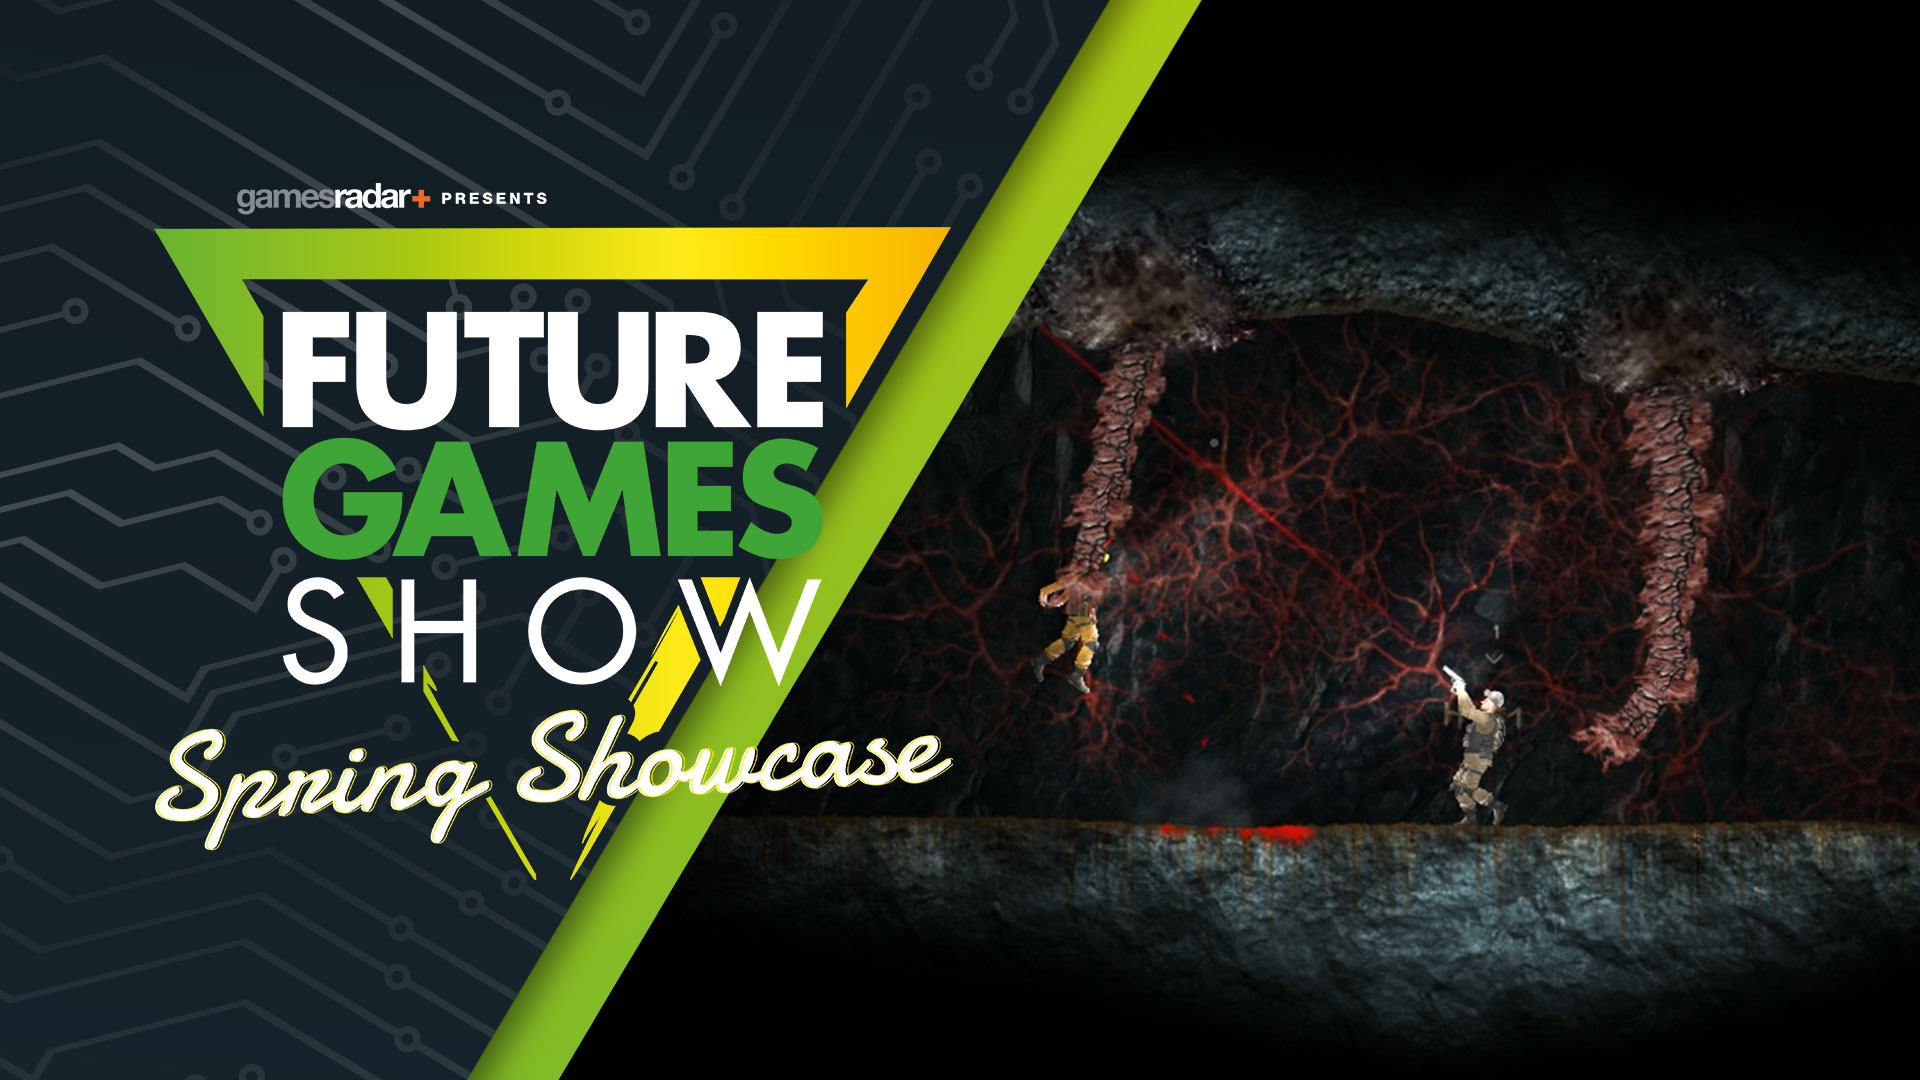 Игры будущего 26 февраля. Future games show. Spirit Future games. Расписание Future games show. Future games show logo.